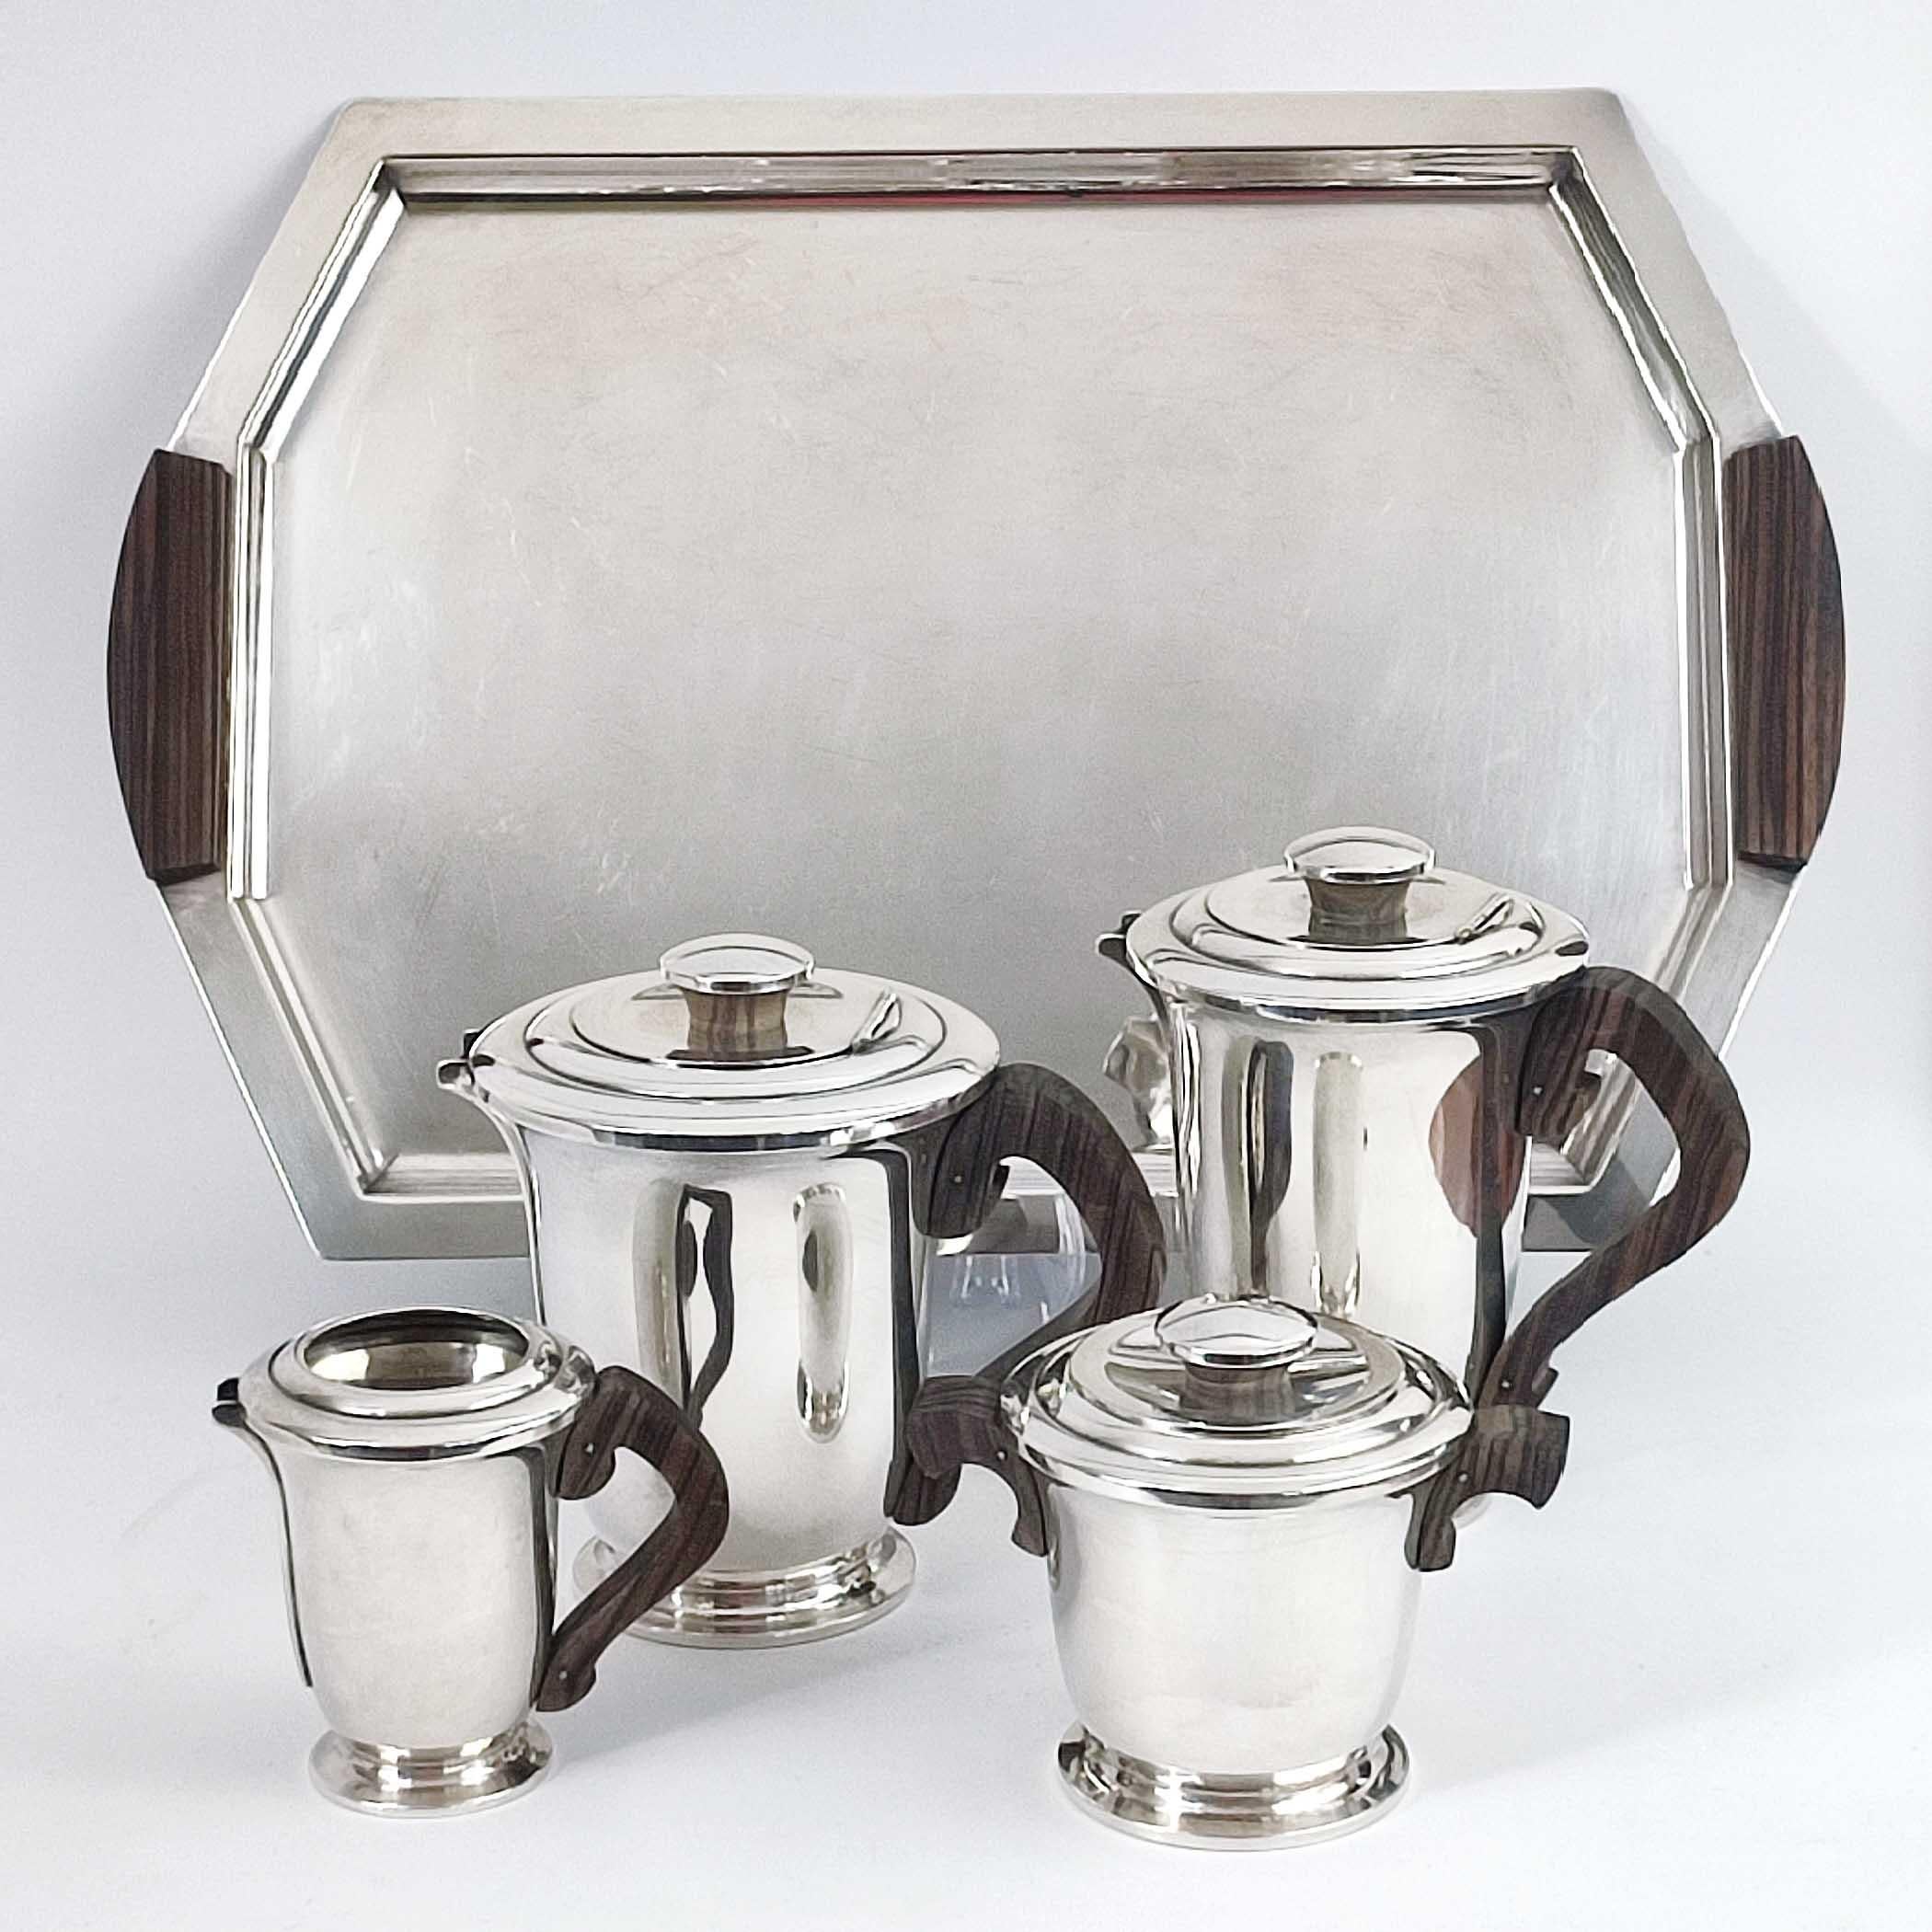 Ravinet d'Enfert, Frankreich, um 1930.
Art Deco Französisch Silber Platte und Ebenholz 5 Stück Tee & Kaffee-Set mit passenden Tablett. Enthält eine Teekanne mit Klappdeckel, eine Kaffeekanne mit Klappdeckel, ein Sahnekännchen, eine Zuckerdose mit